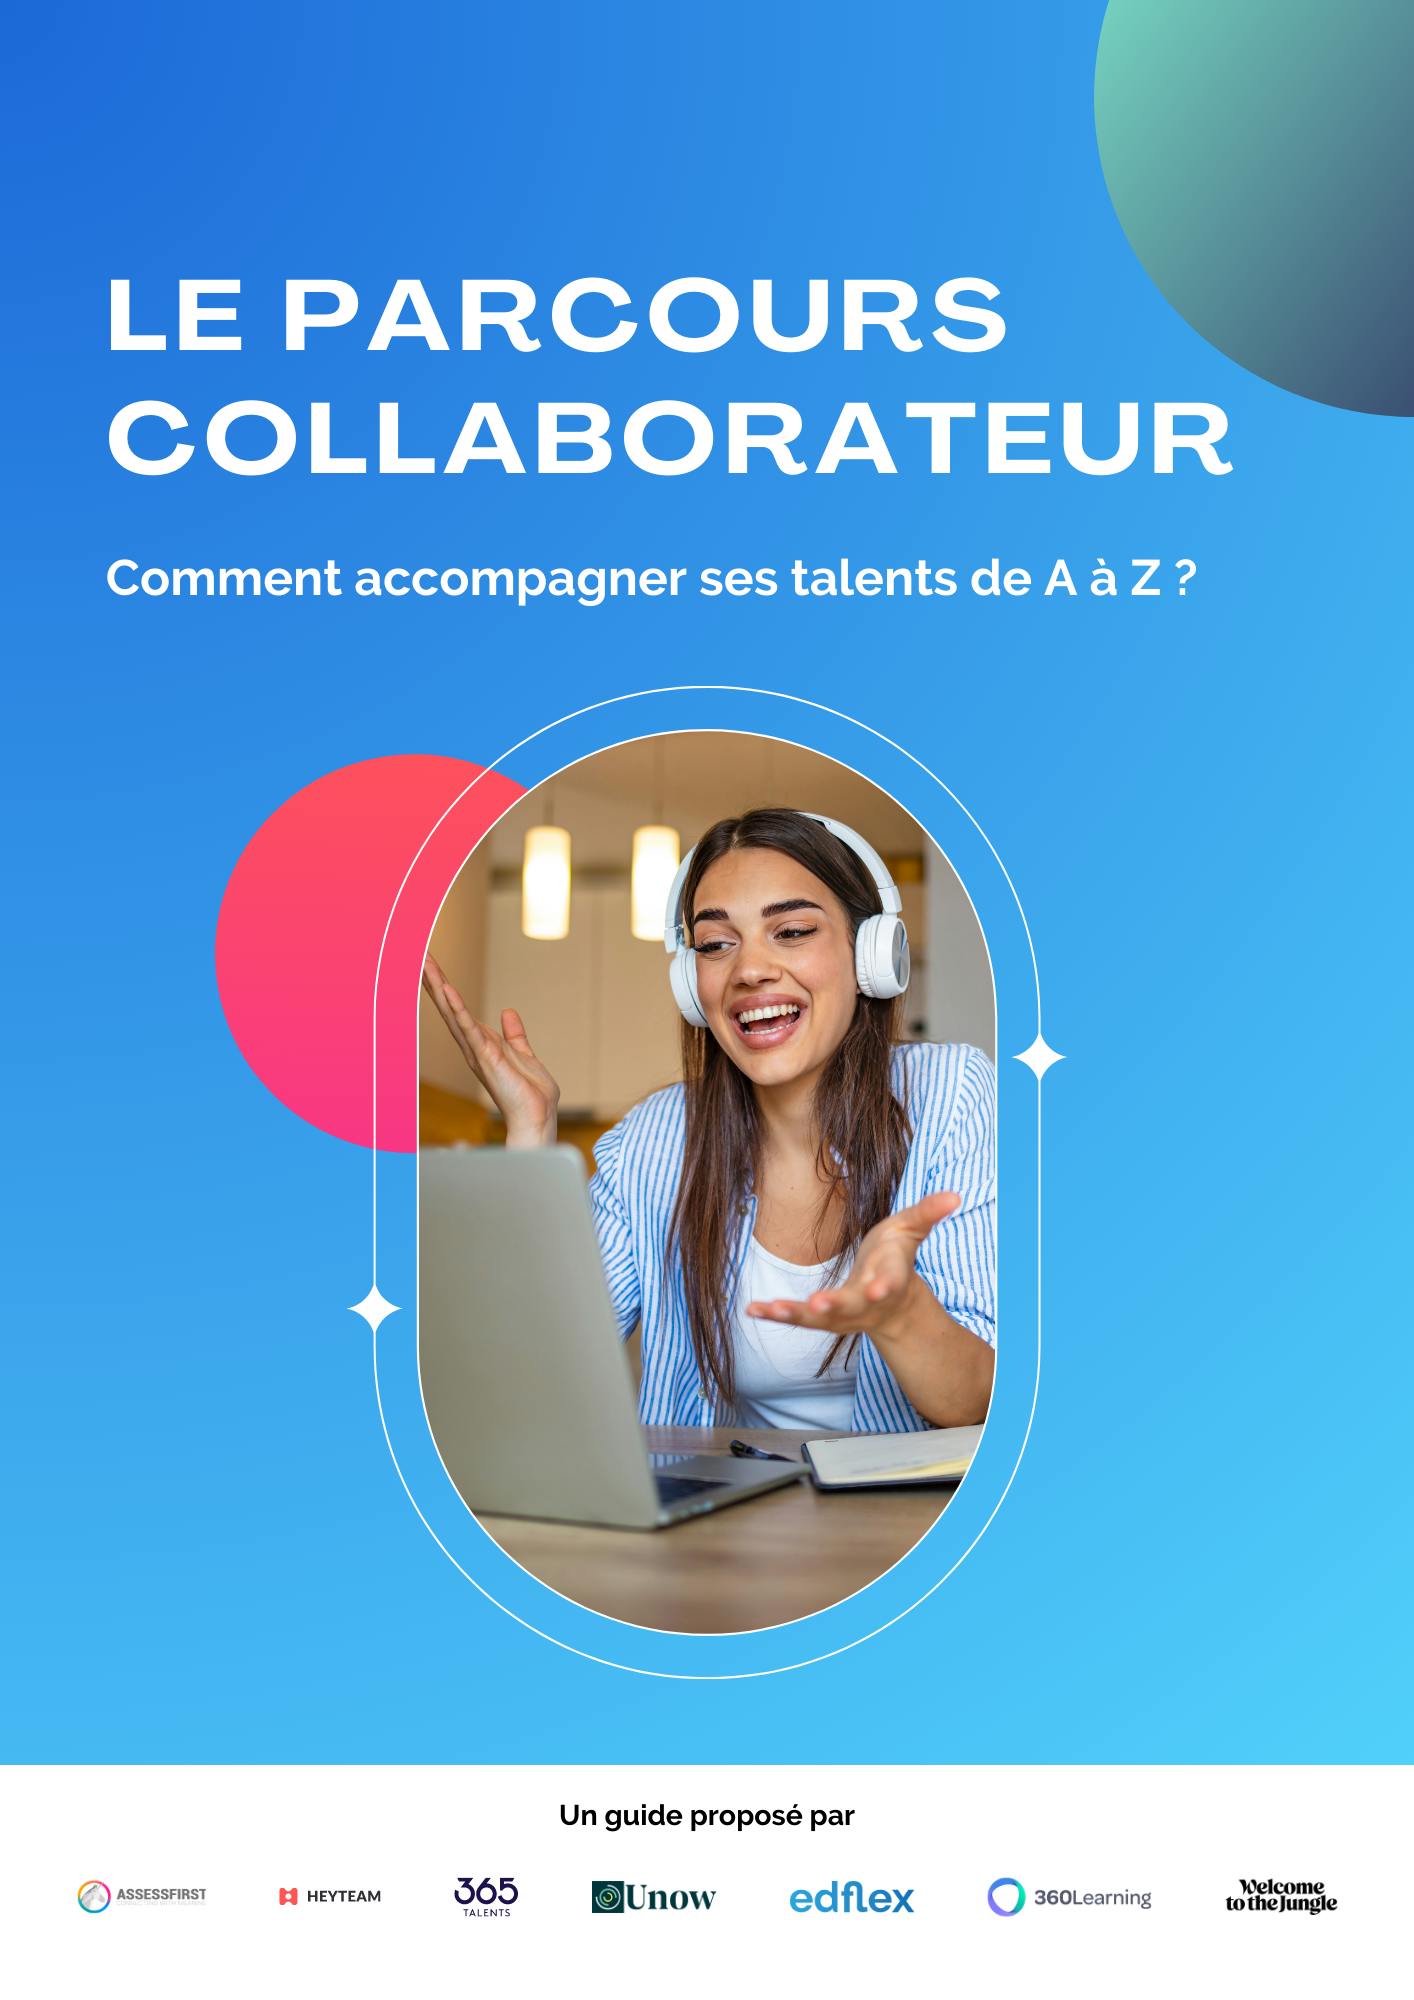 Le parcours collaborateur : comment accompagner ses talents de A à Z ?